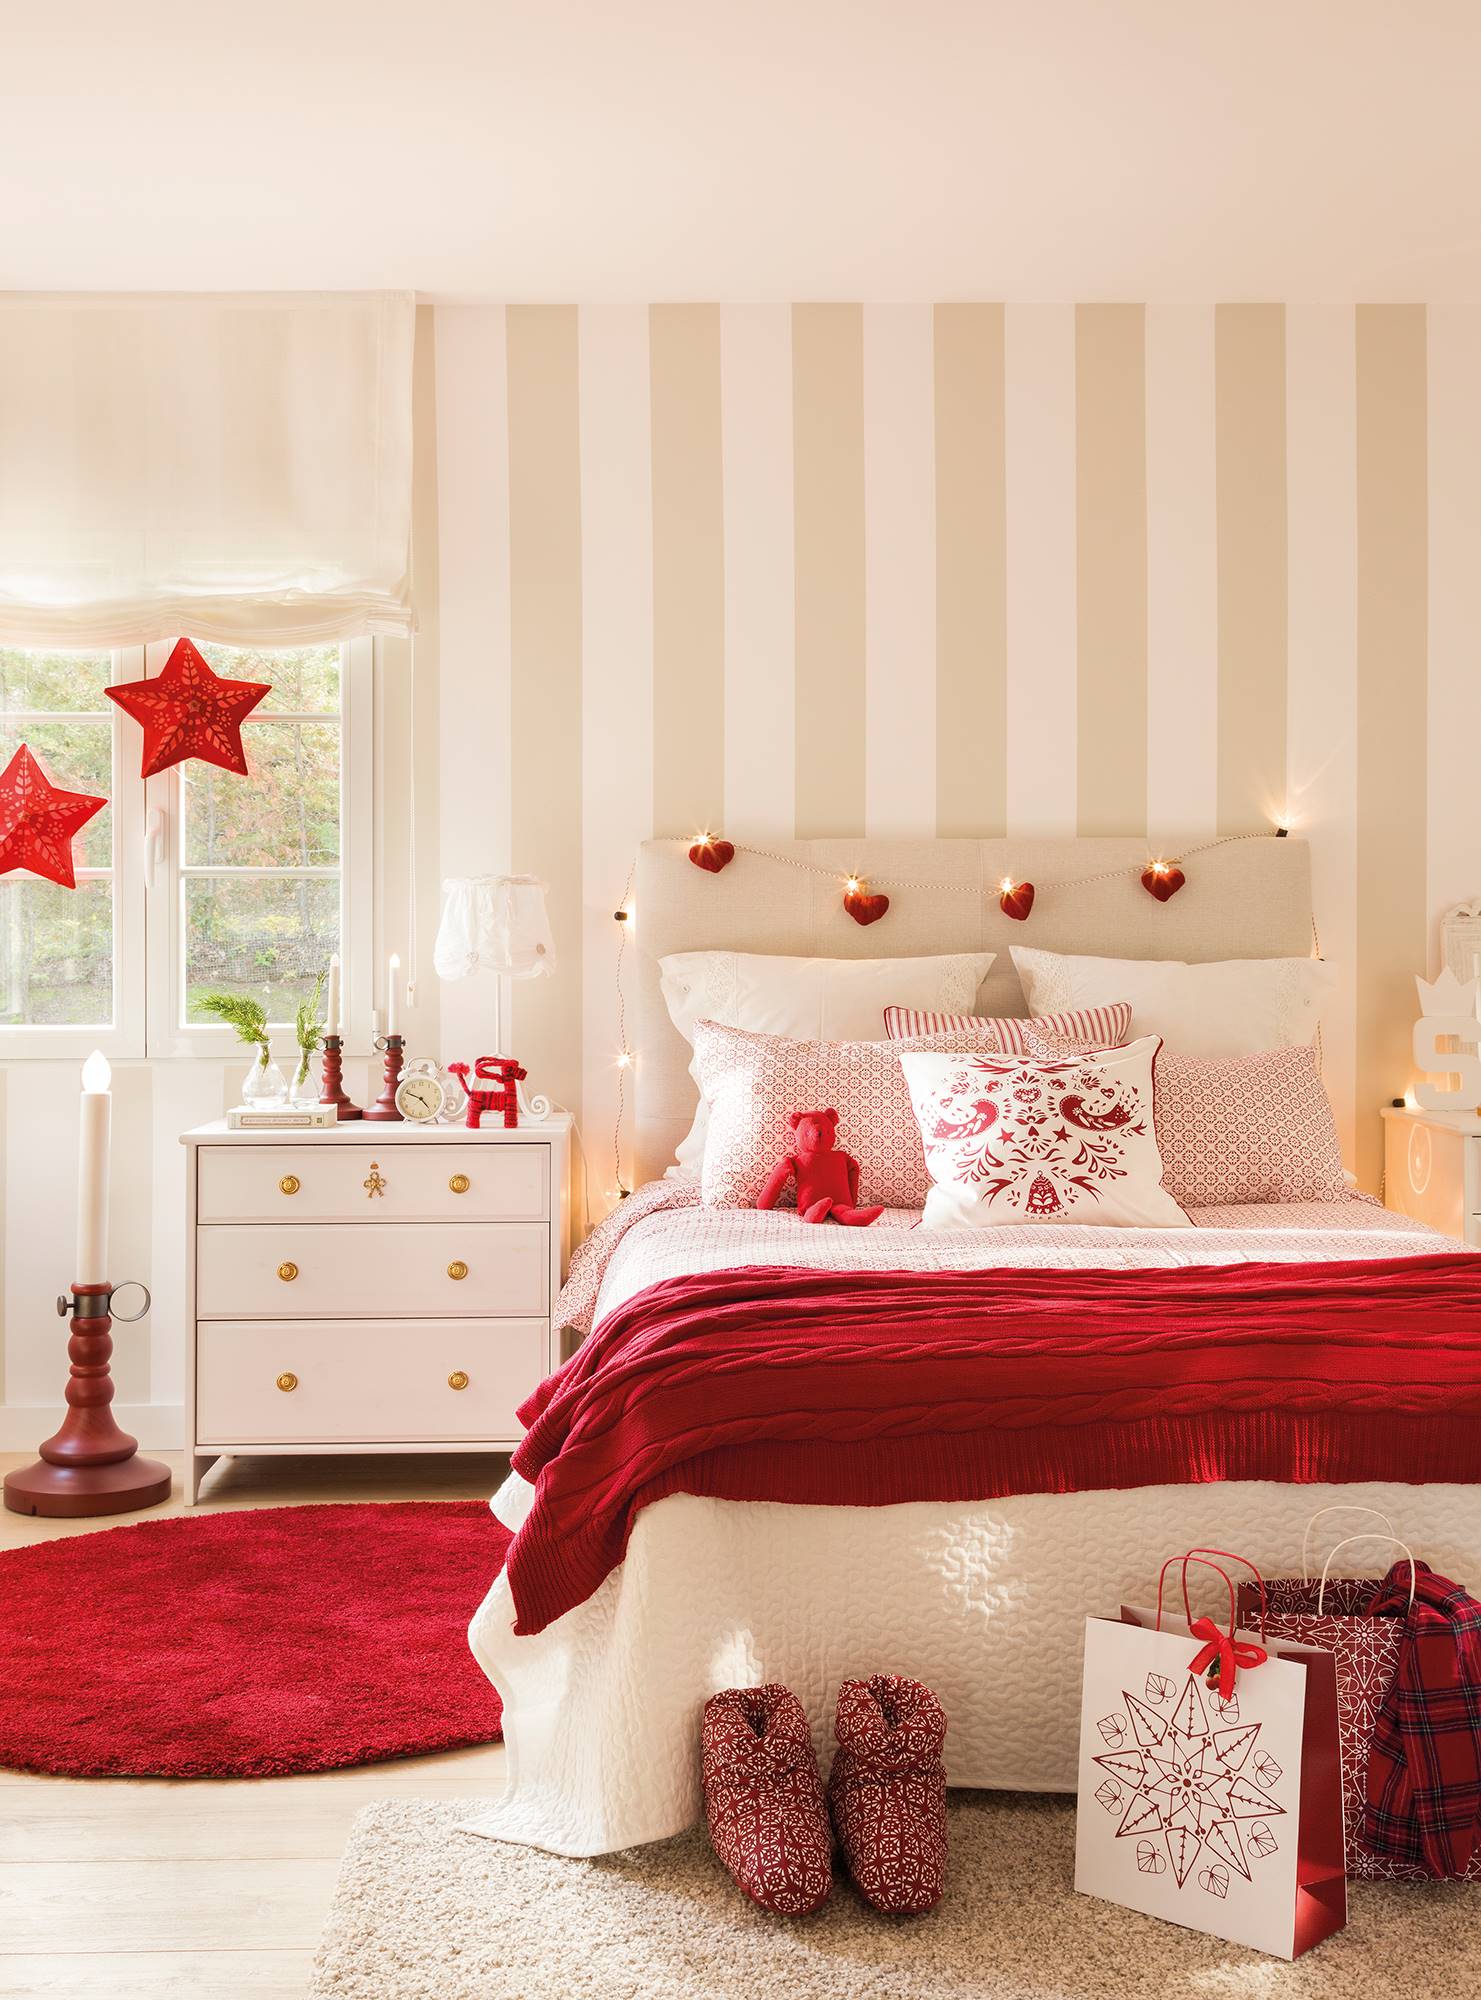 Dormitorio con decoración navideña en color rojo.